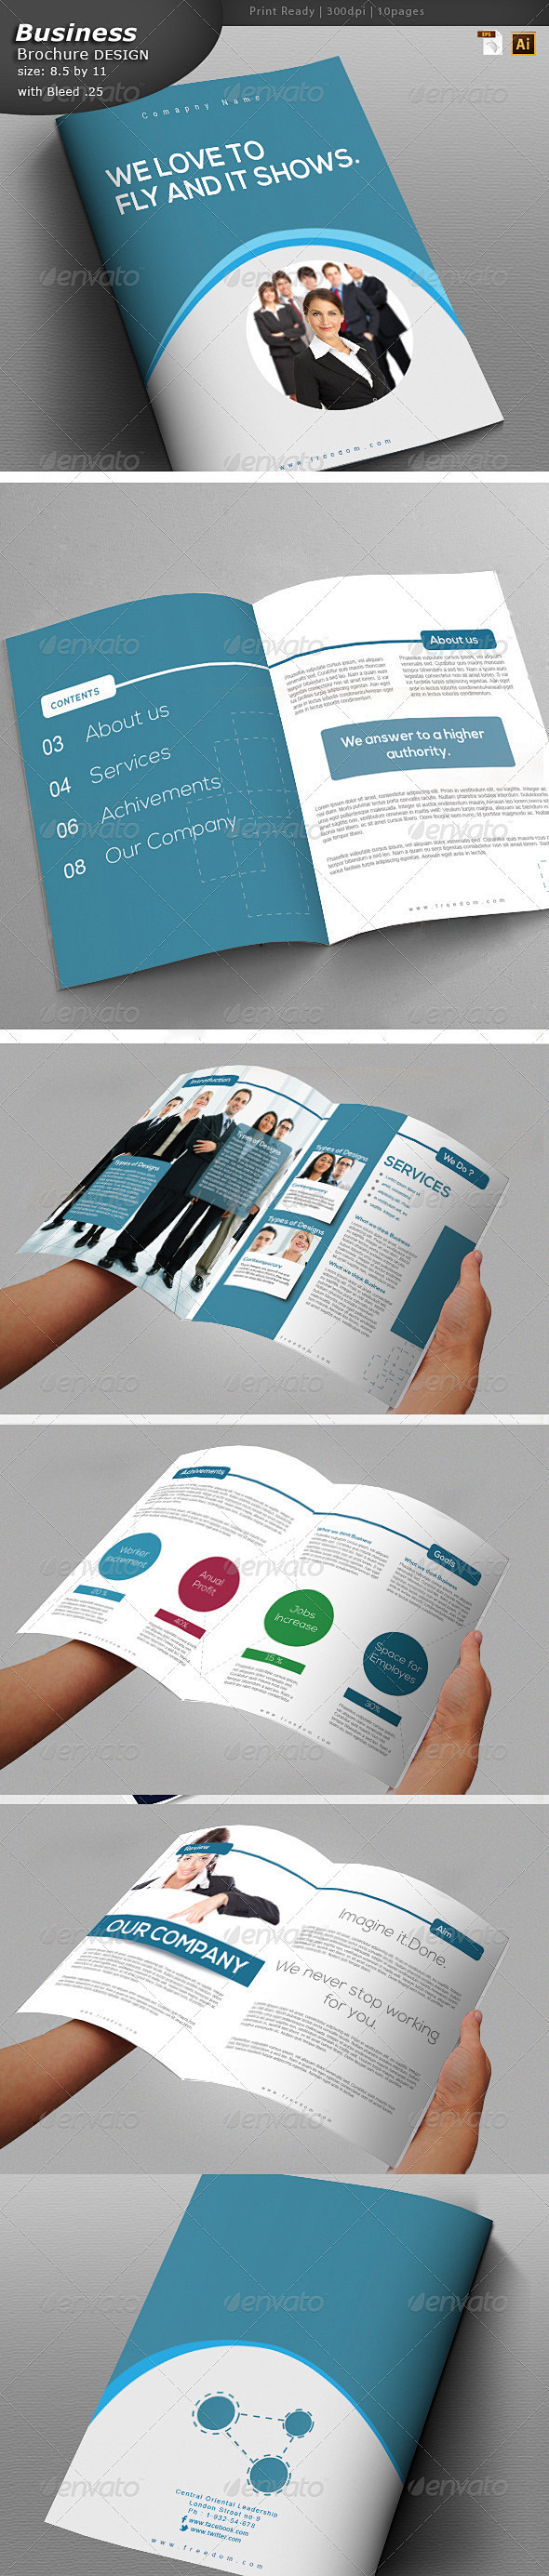 服务画册设计 - 宣传册打印模板